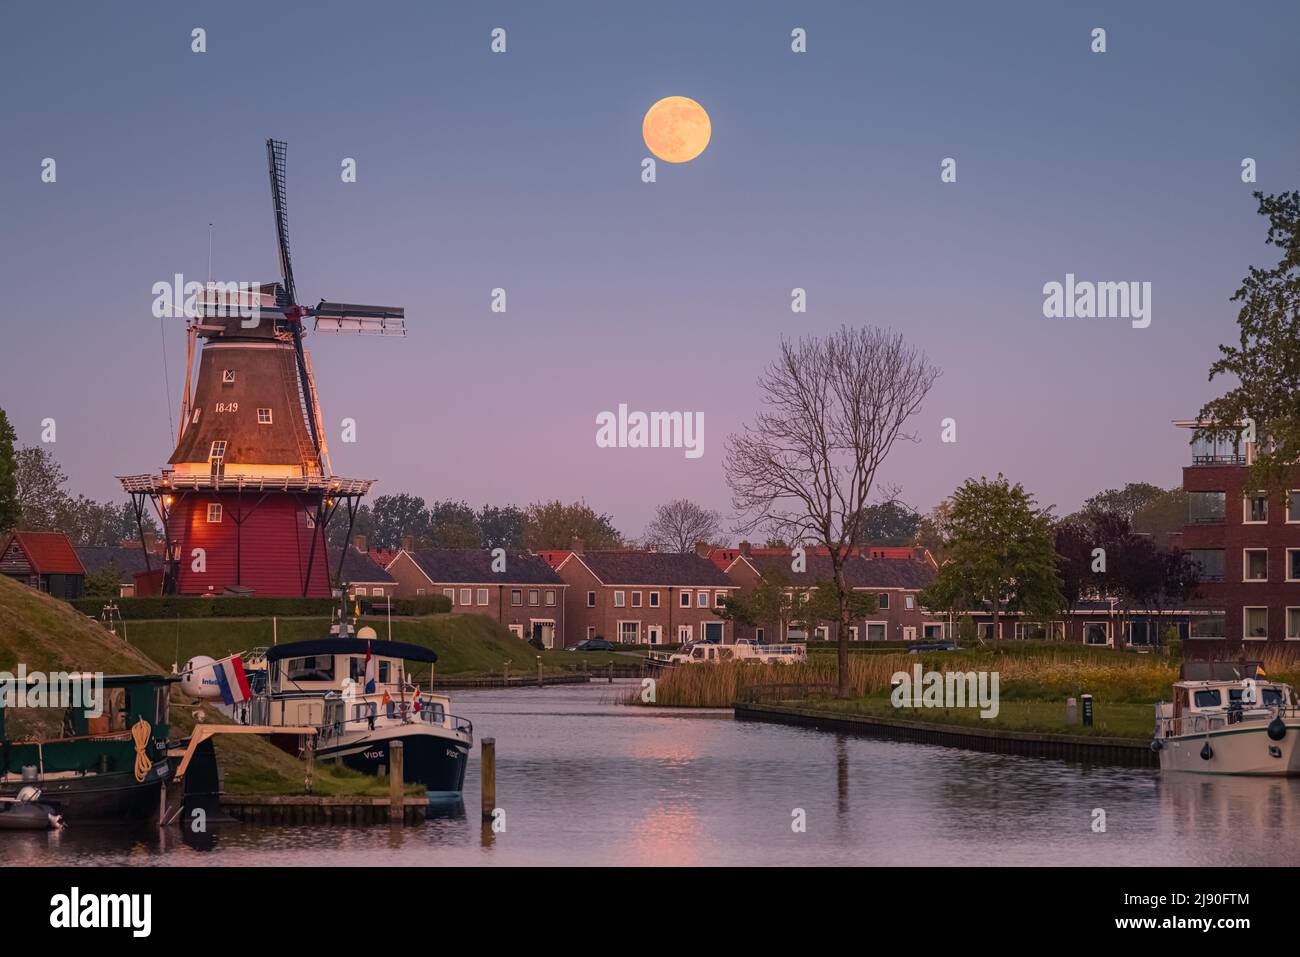 Puesta de sol y puesta de luna llena cerca de Flour Mill 'De Hoop' en la ciudad holandesa de Dokkum, en la provincia de Frisia en la parte norte de la N Foto de stock